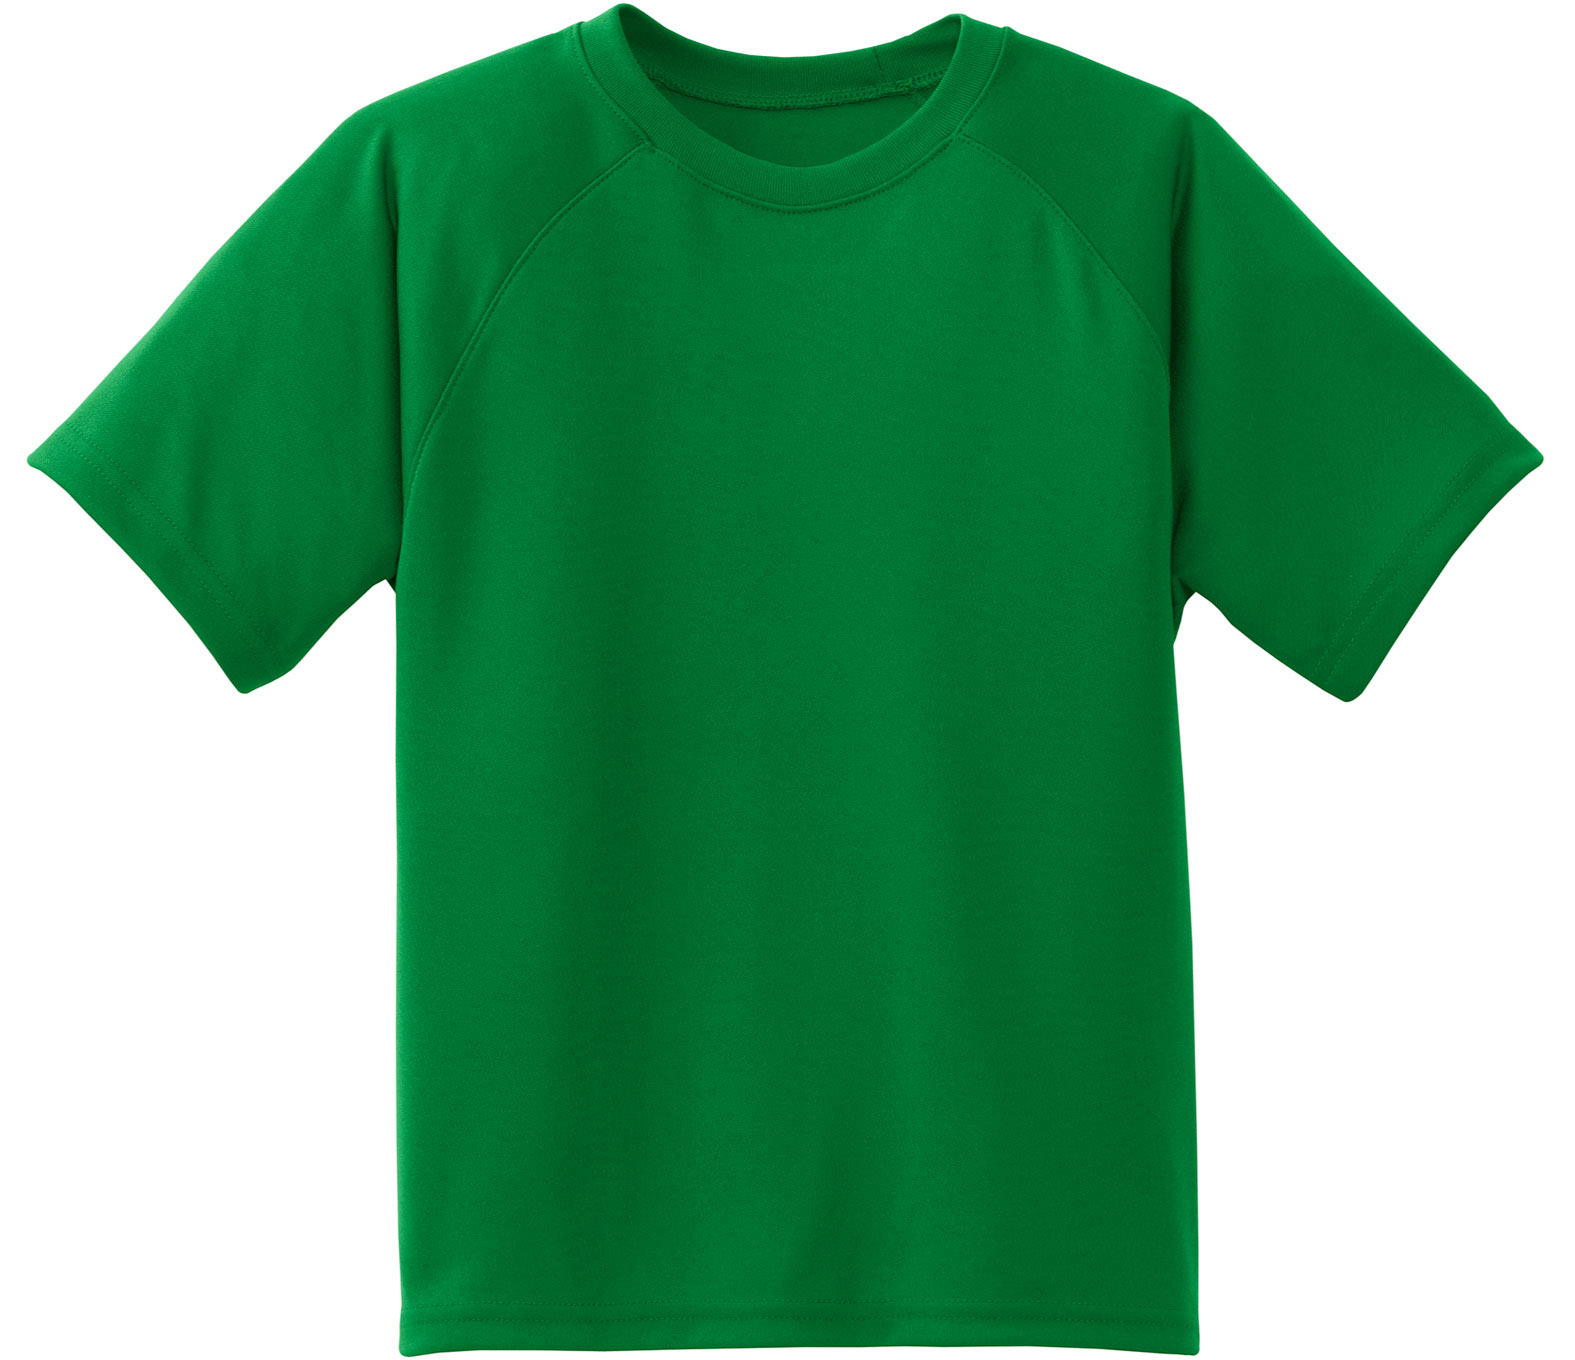 Lime Green T Shirt Template ClipArt Best